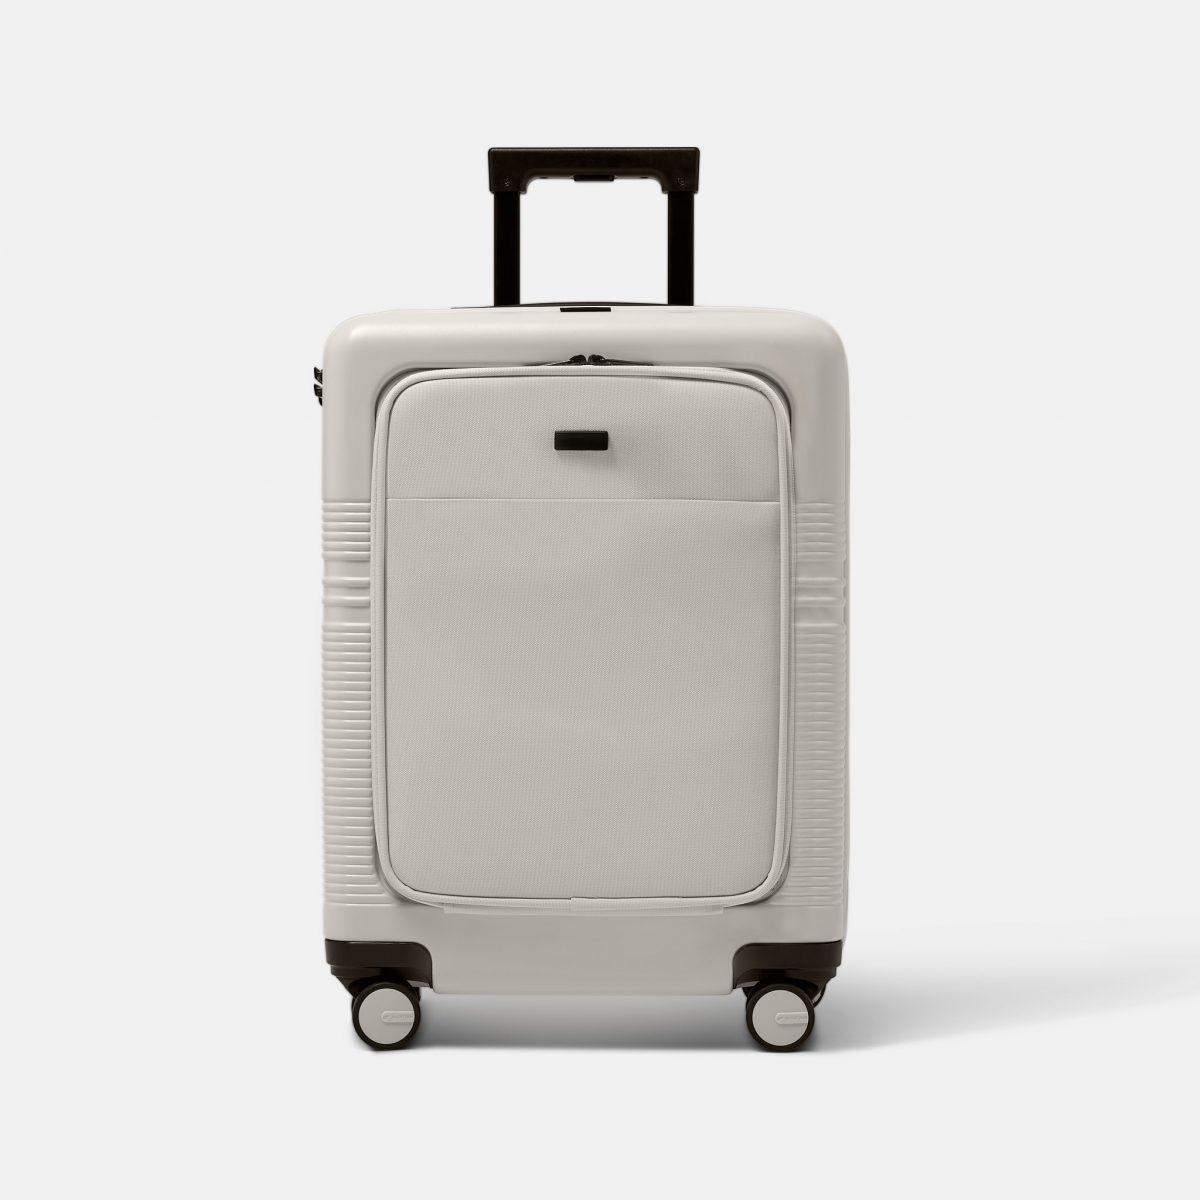 NORTVI sustainable design suitcase wit met laptop vak gemaakt van duurzaam materiaal. Perfecte reis trolley te gebruiken als handbagage.